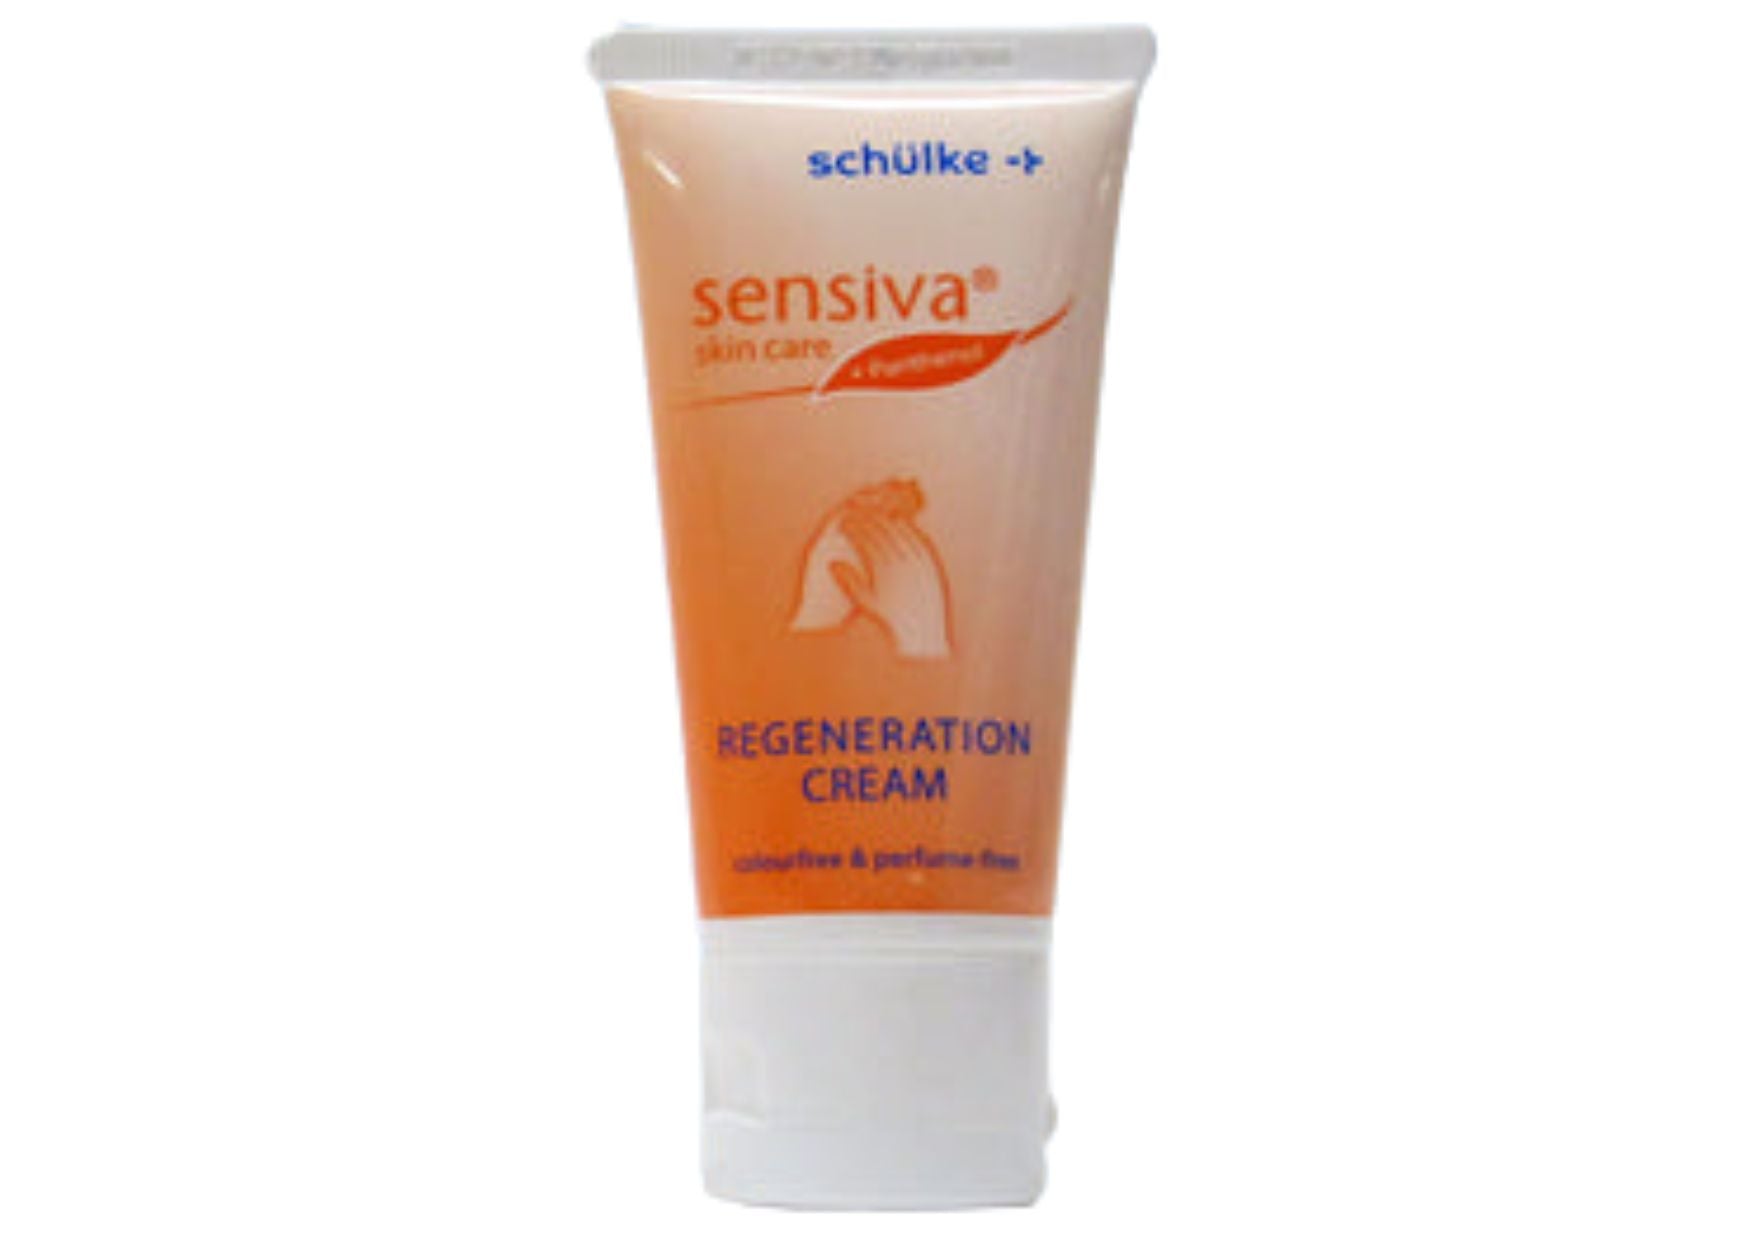 Schülke sensiva regeneration cream, 50 ml tube